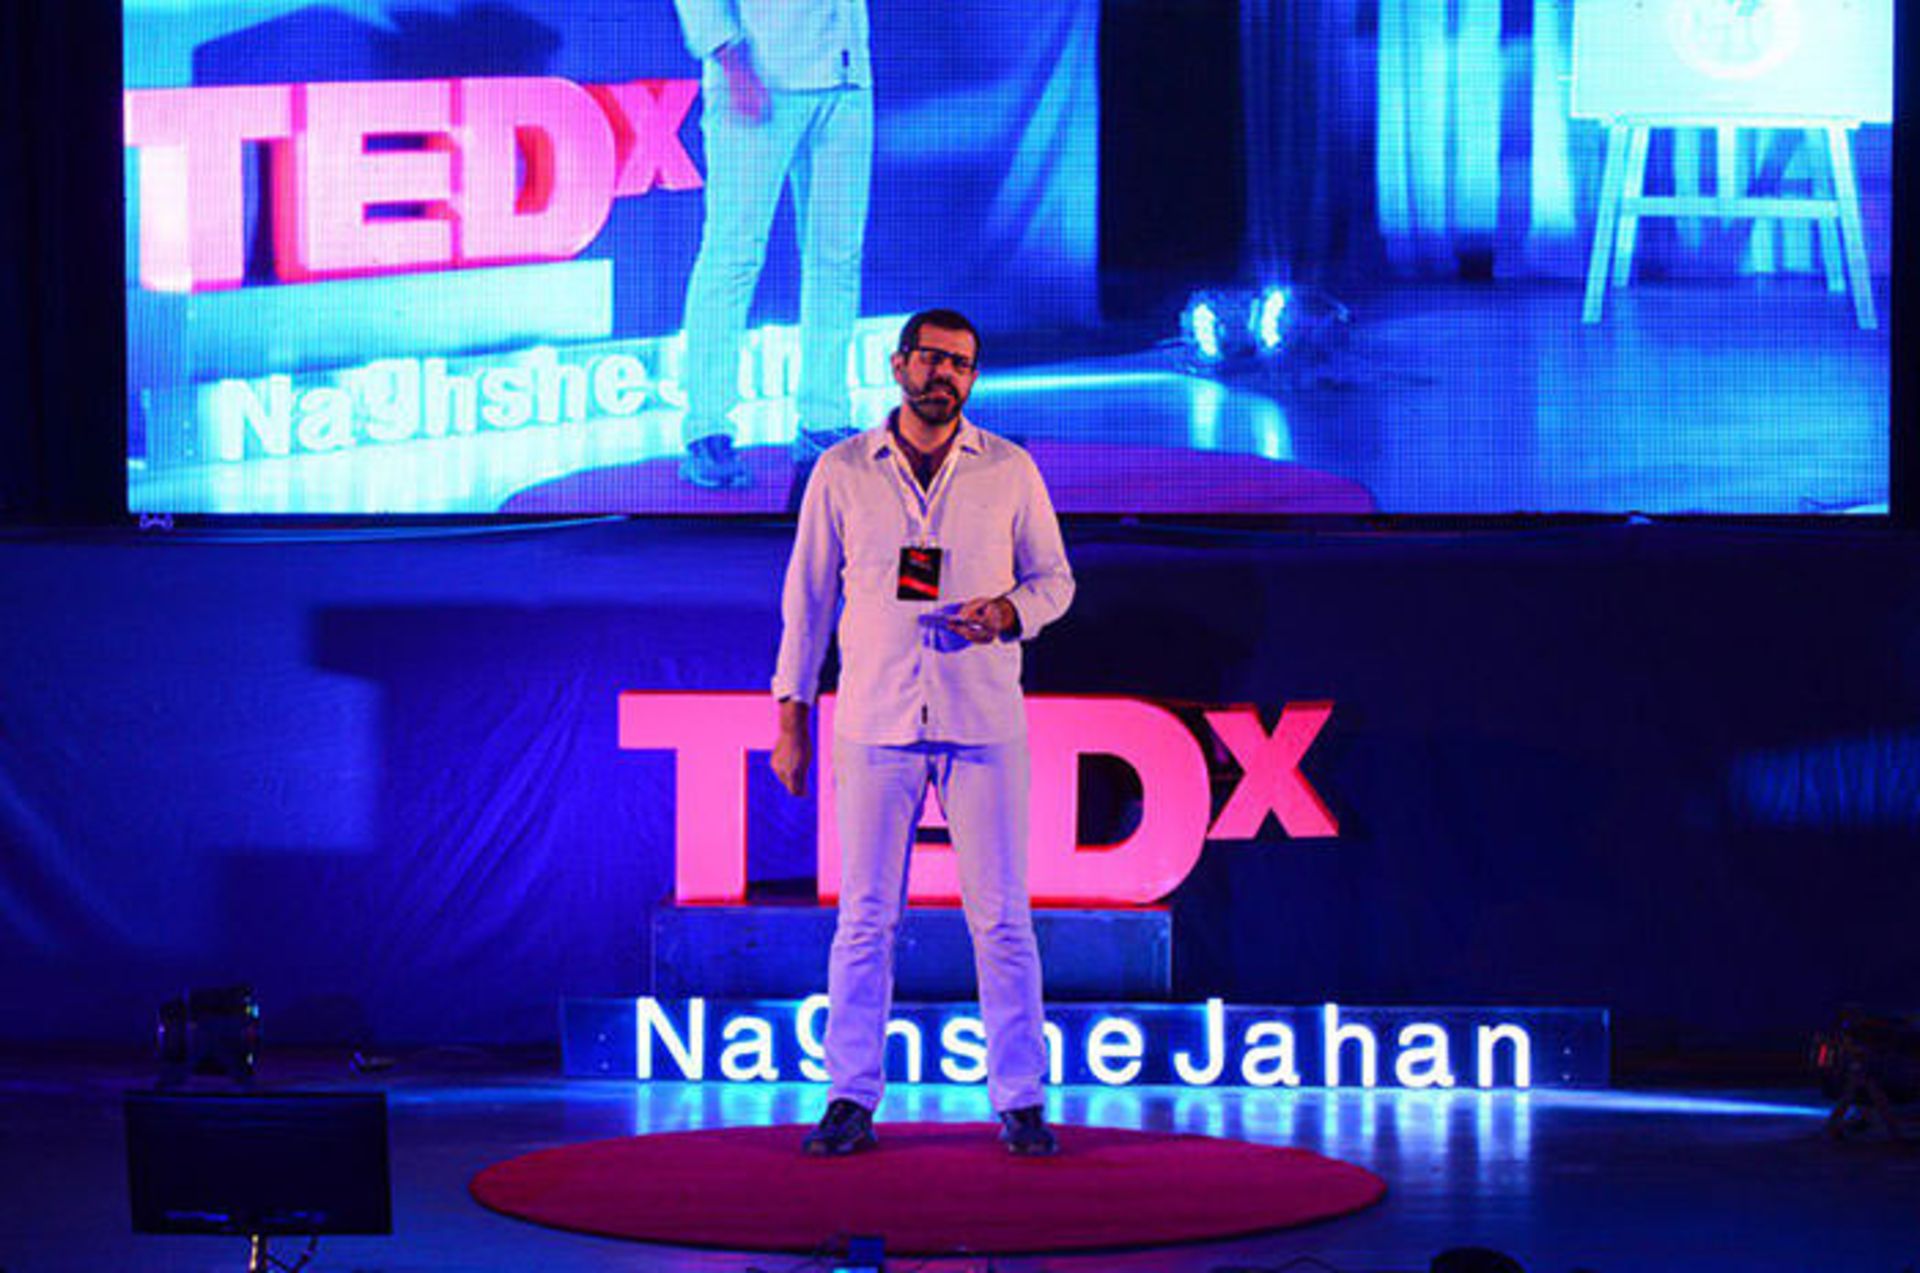 مرجع متخصصين ايران تدكس نقش جهان / Tedx